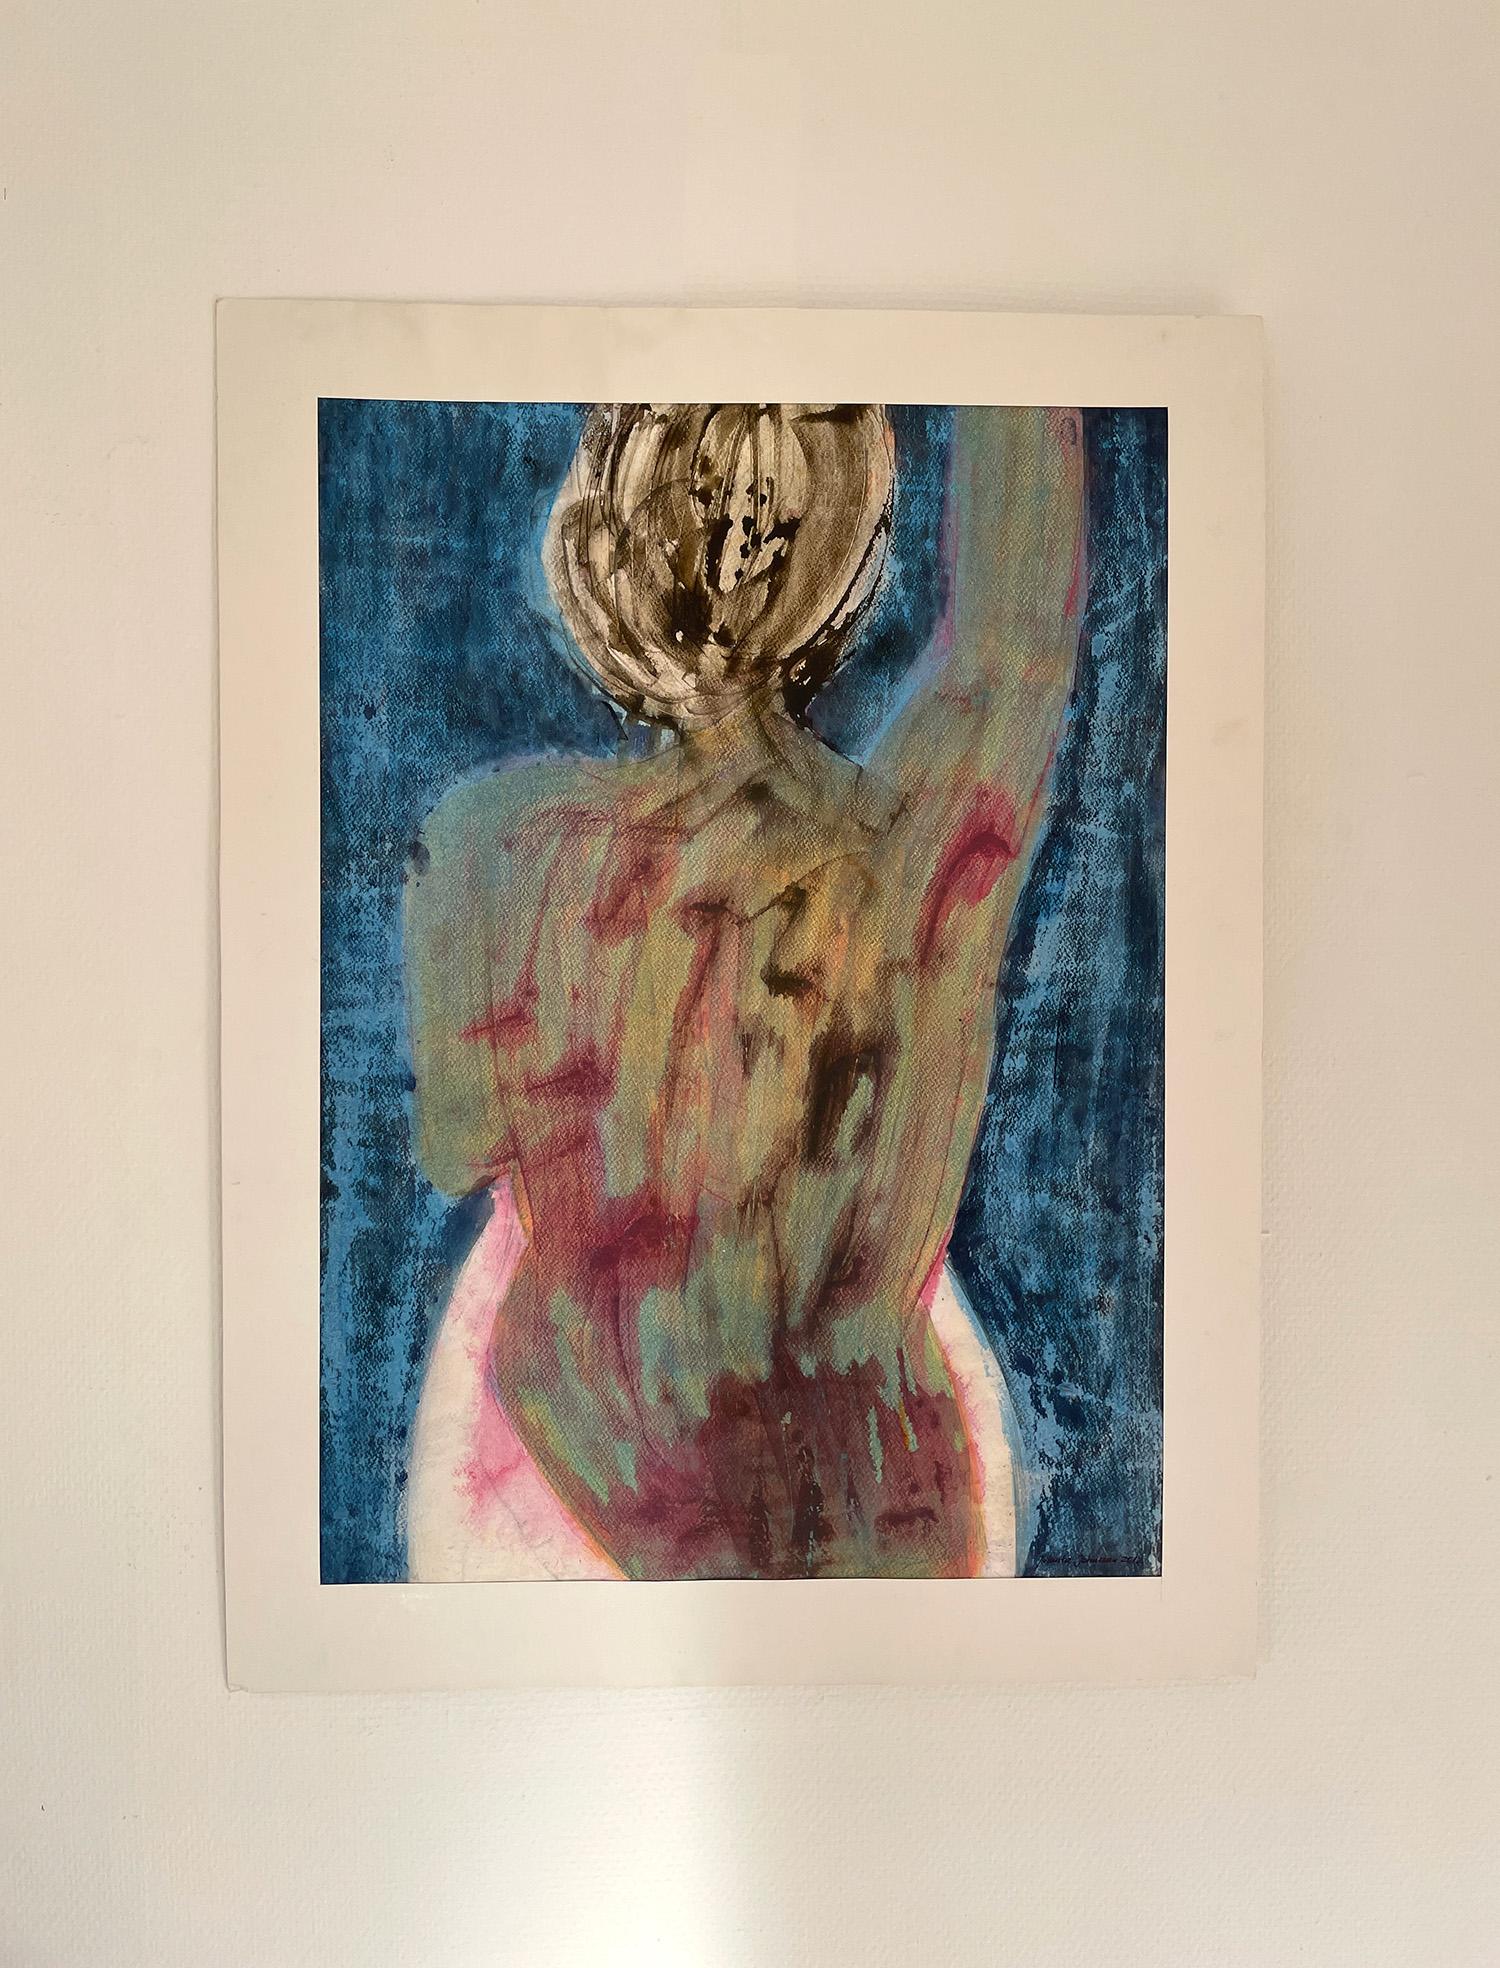 Nackte Frau im Bad – Art von Jolanta Johnsson